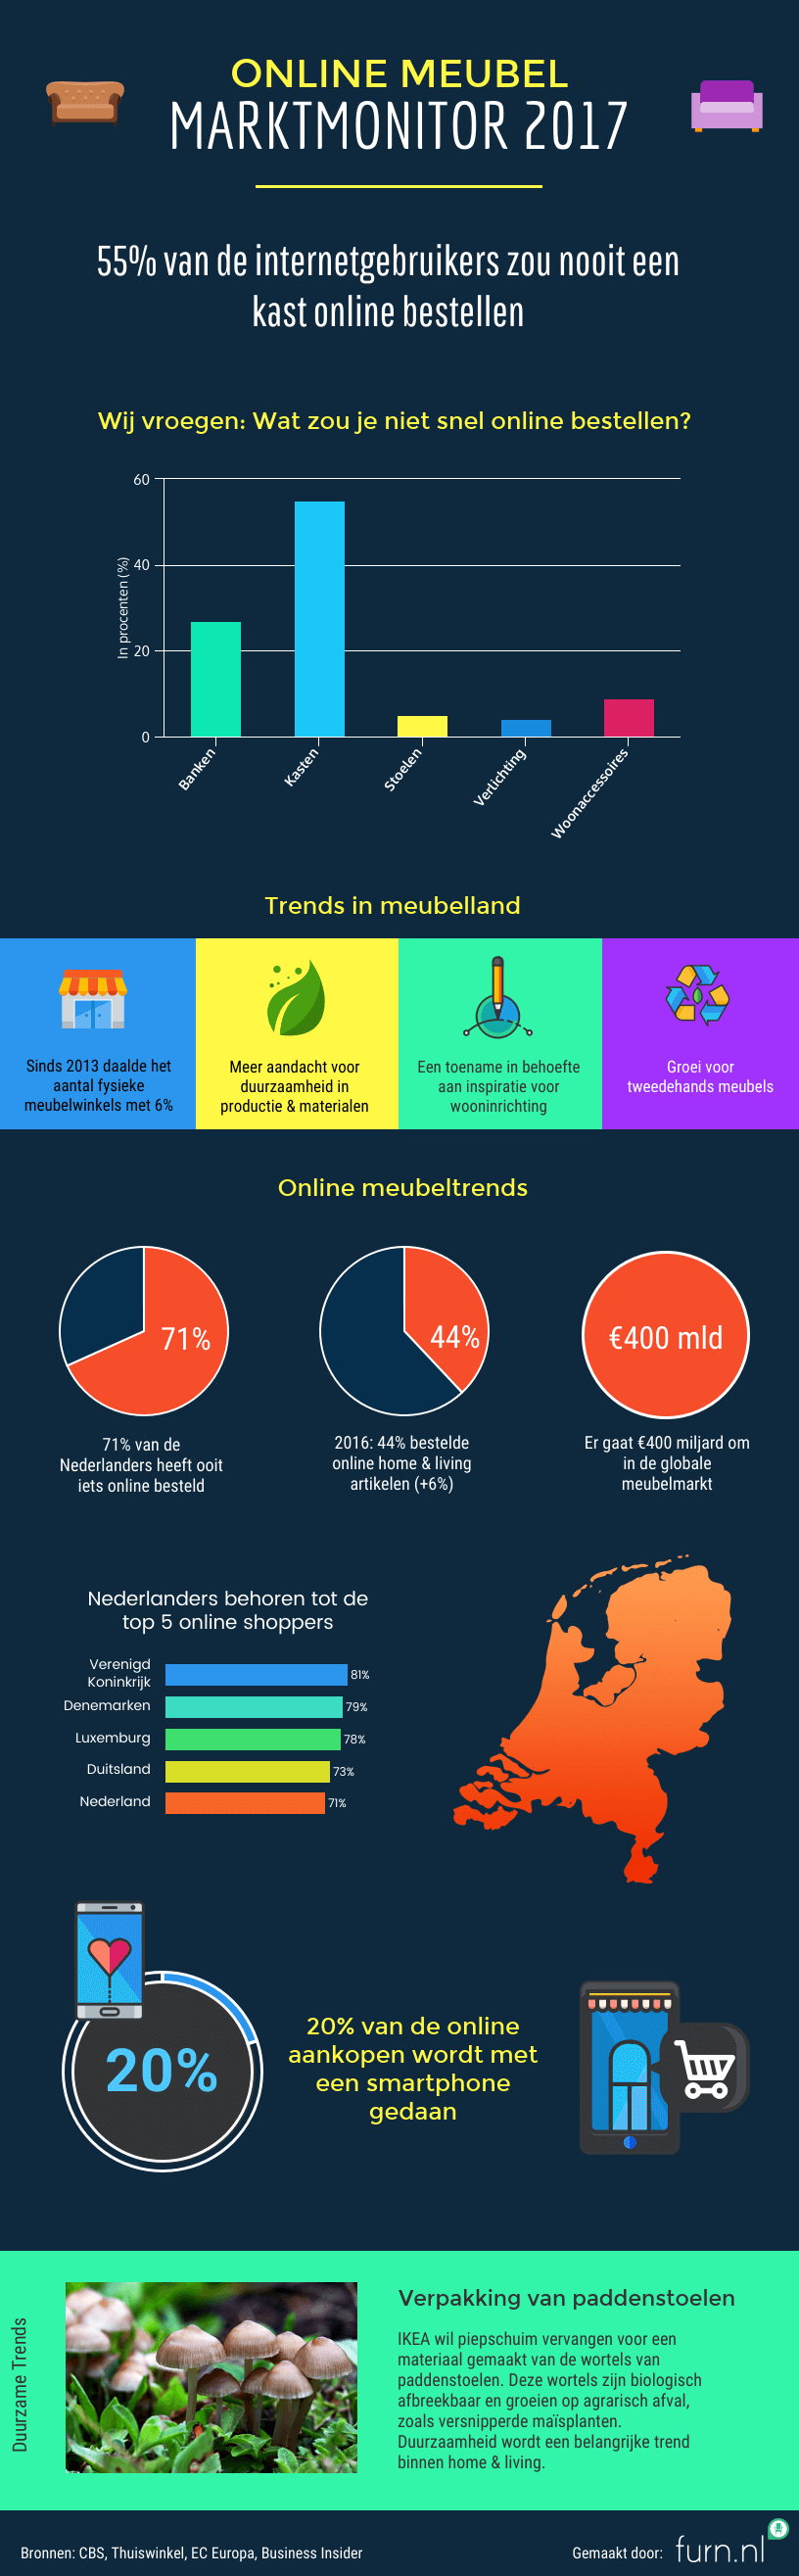 Online Meubel Marktmonitor Infographic